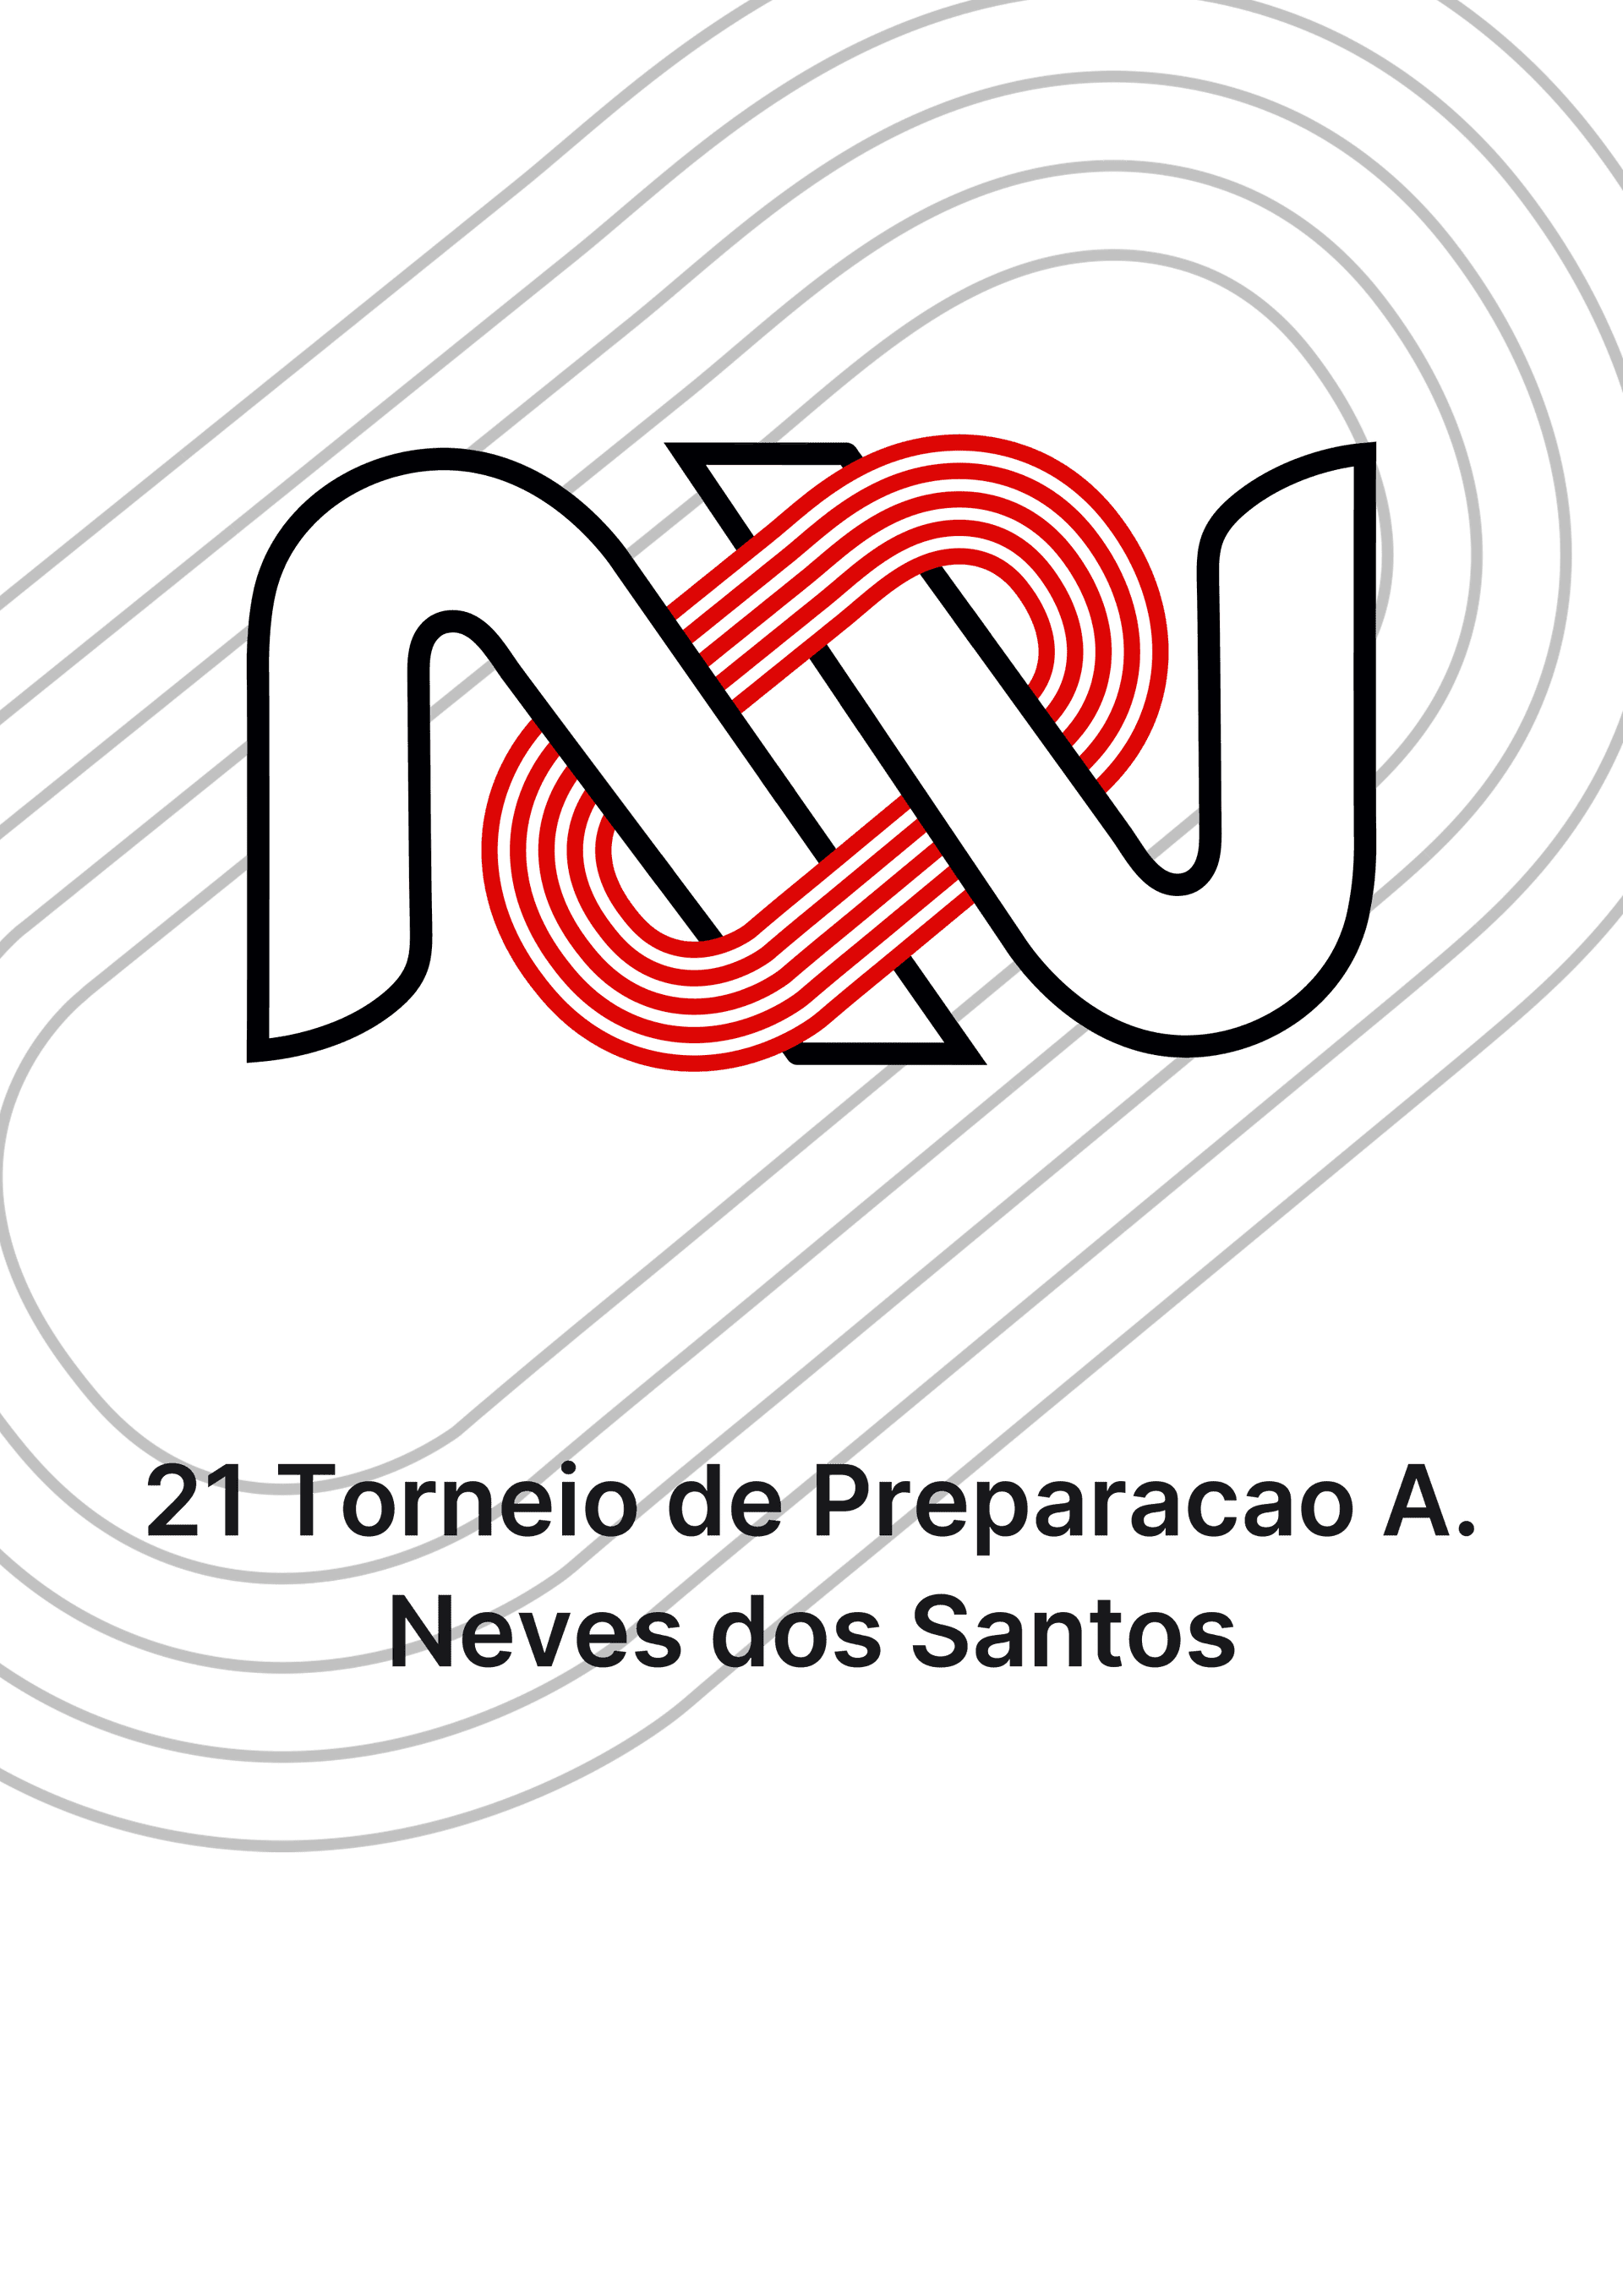 21 Torneio de Preparacao A. Neves dos Santos